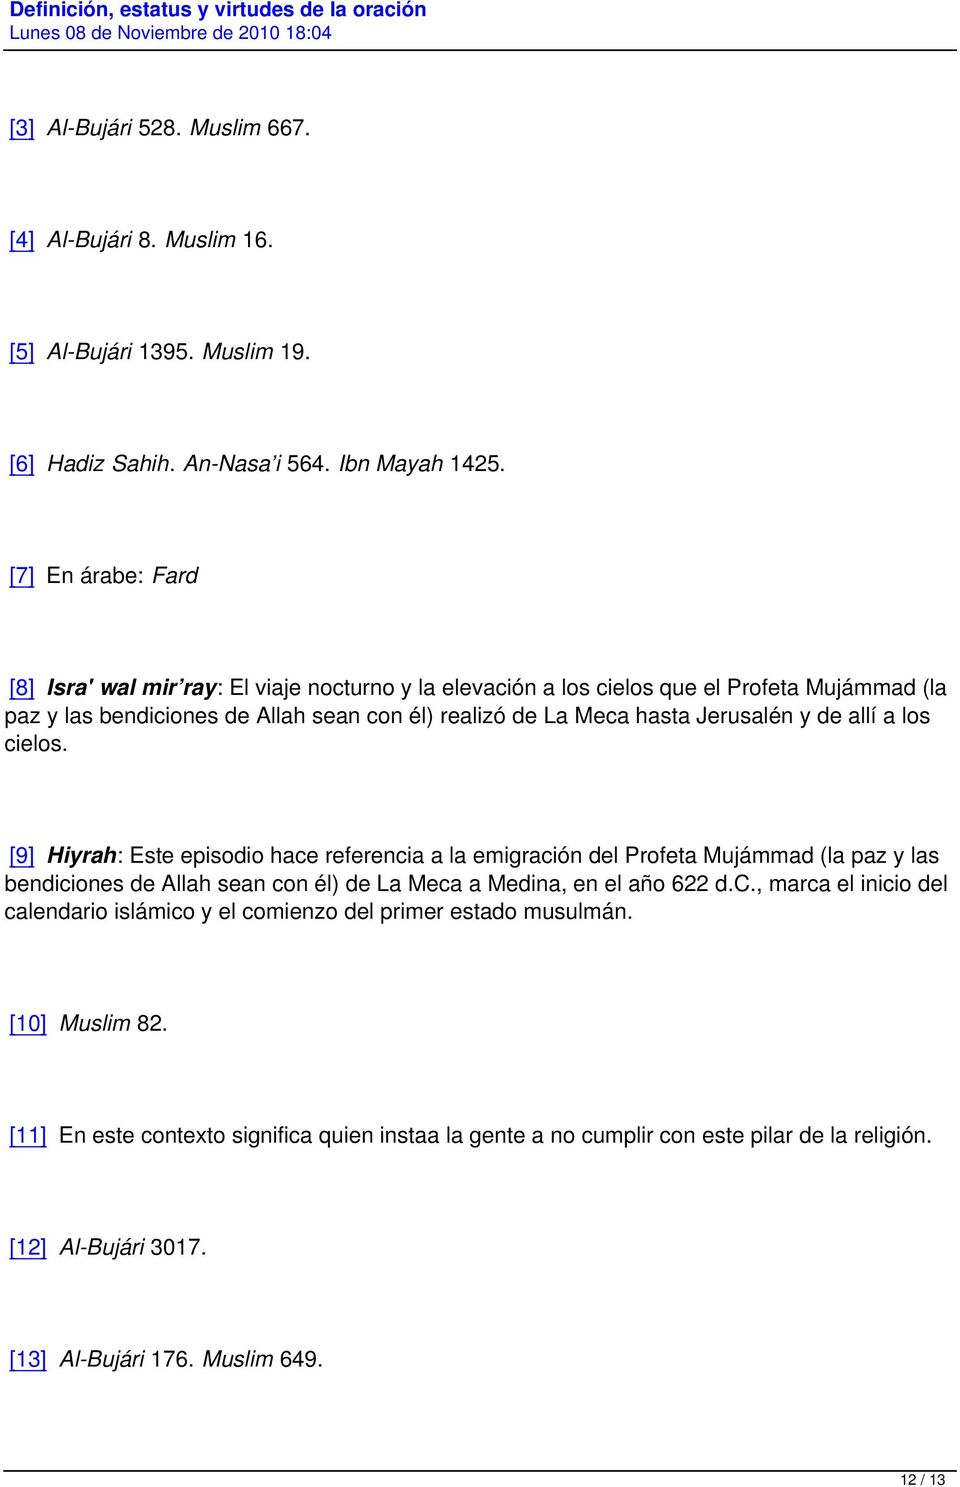 referencia a la emigración del Profeta Mujámmad (la paz y las bendiciones de Allah sean con él) de La Meca a Medina, en el año 622 dc, marca el inicio del calendario islámico y el comienzo